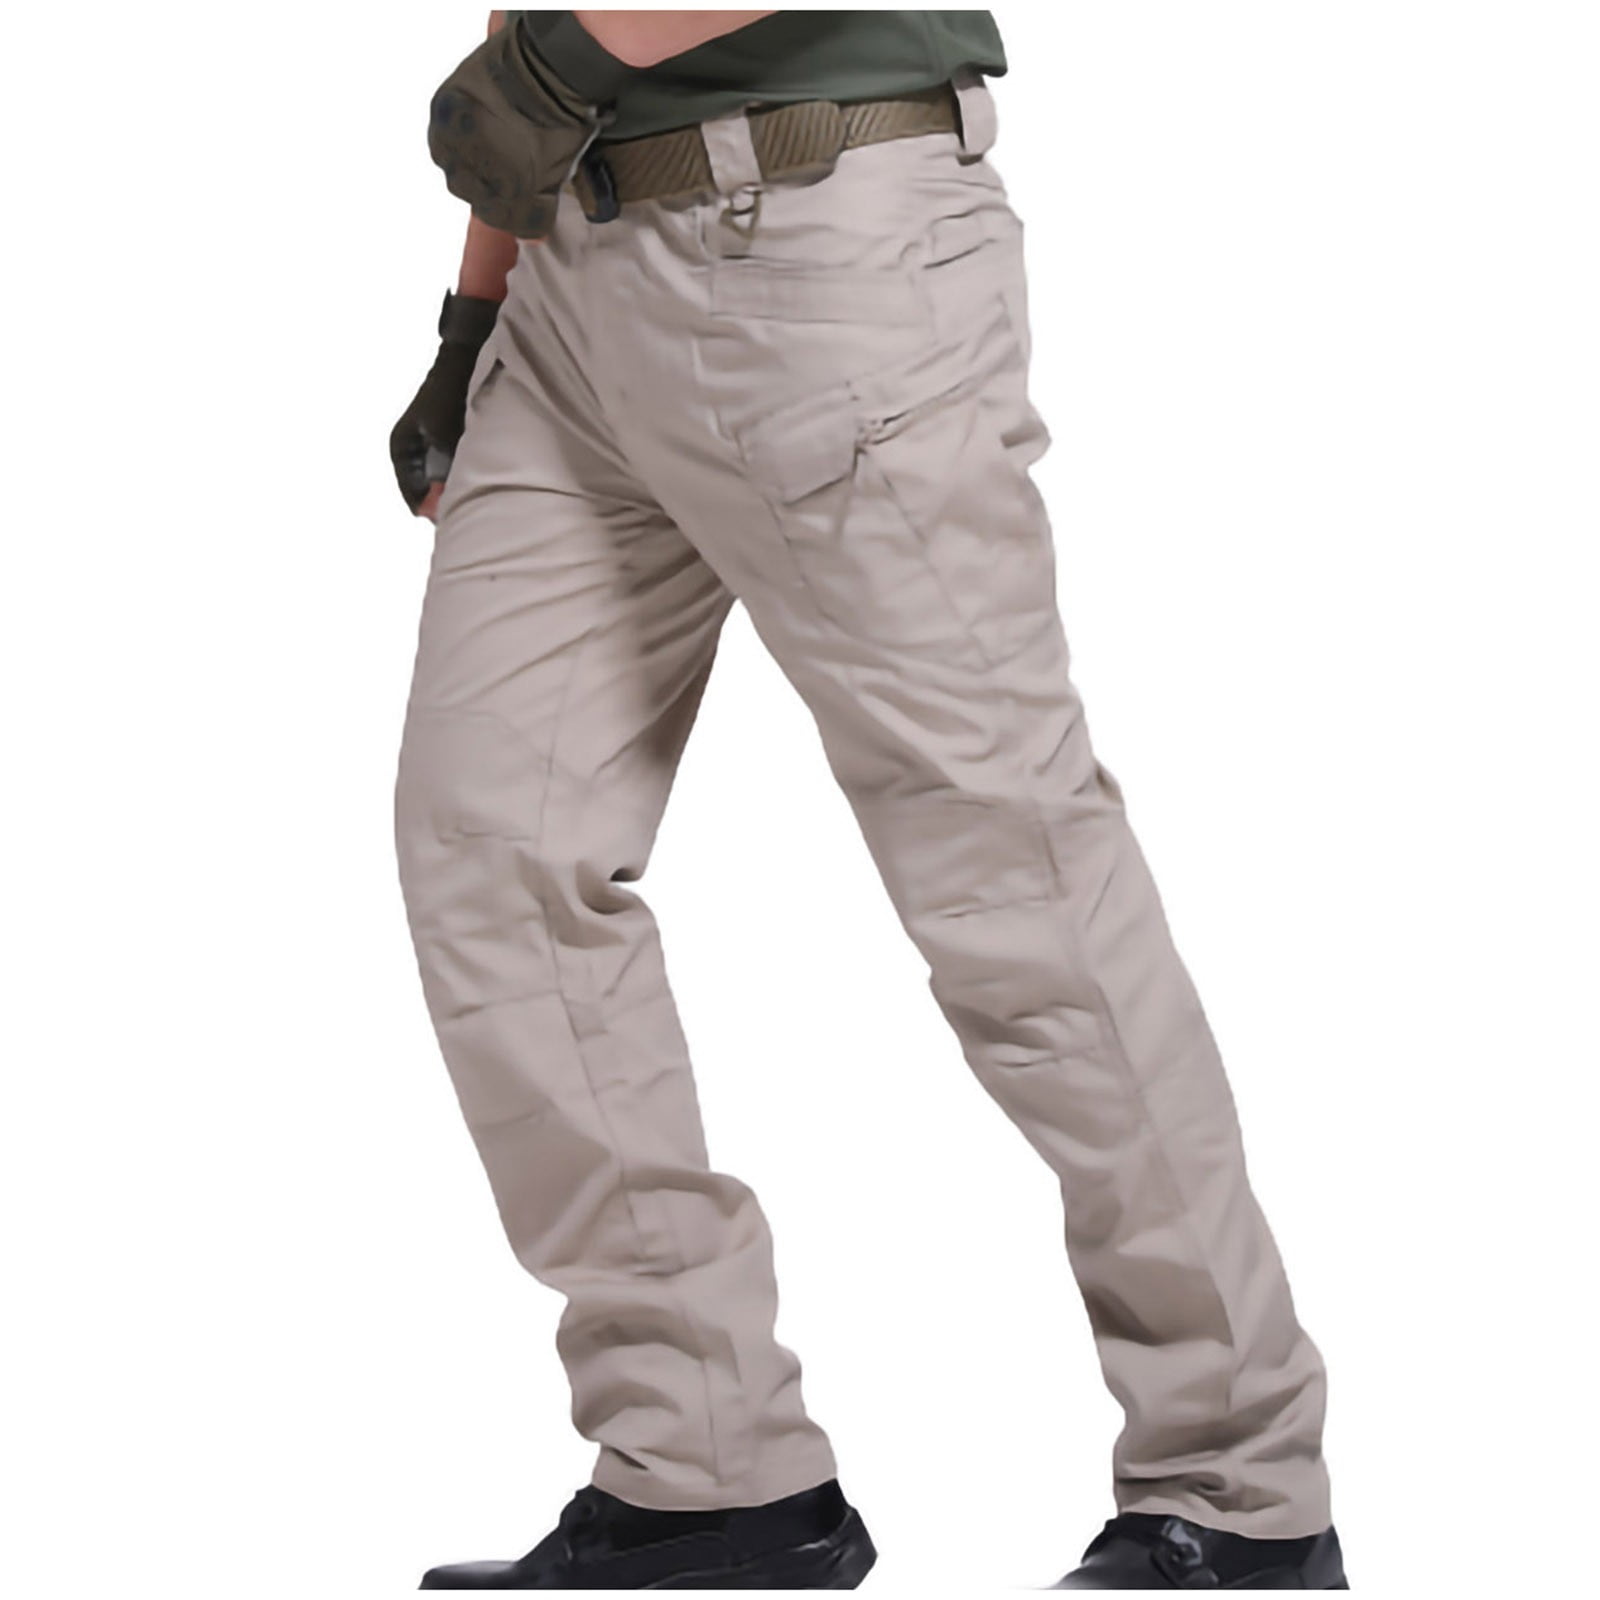 Leodye Pants for Men Clearance Men's Pants Multiple Pockets Cargo ...